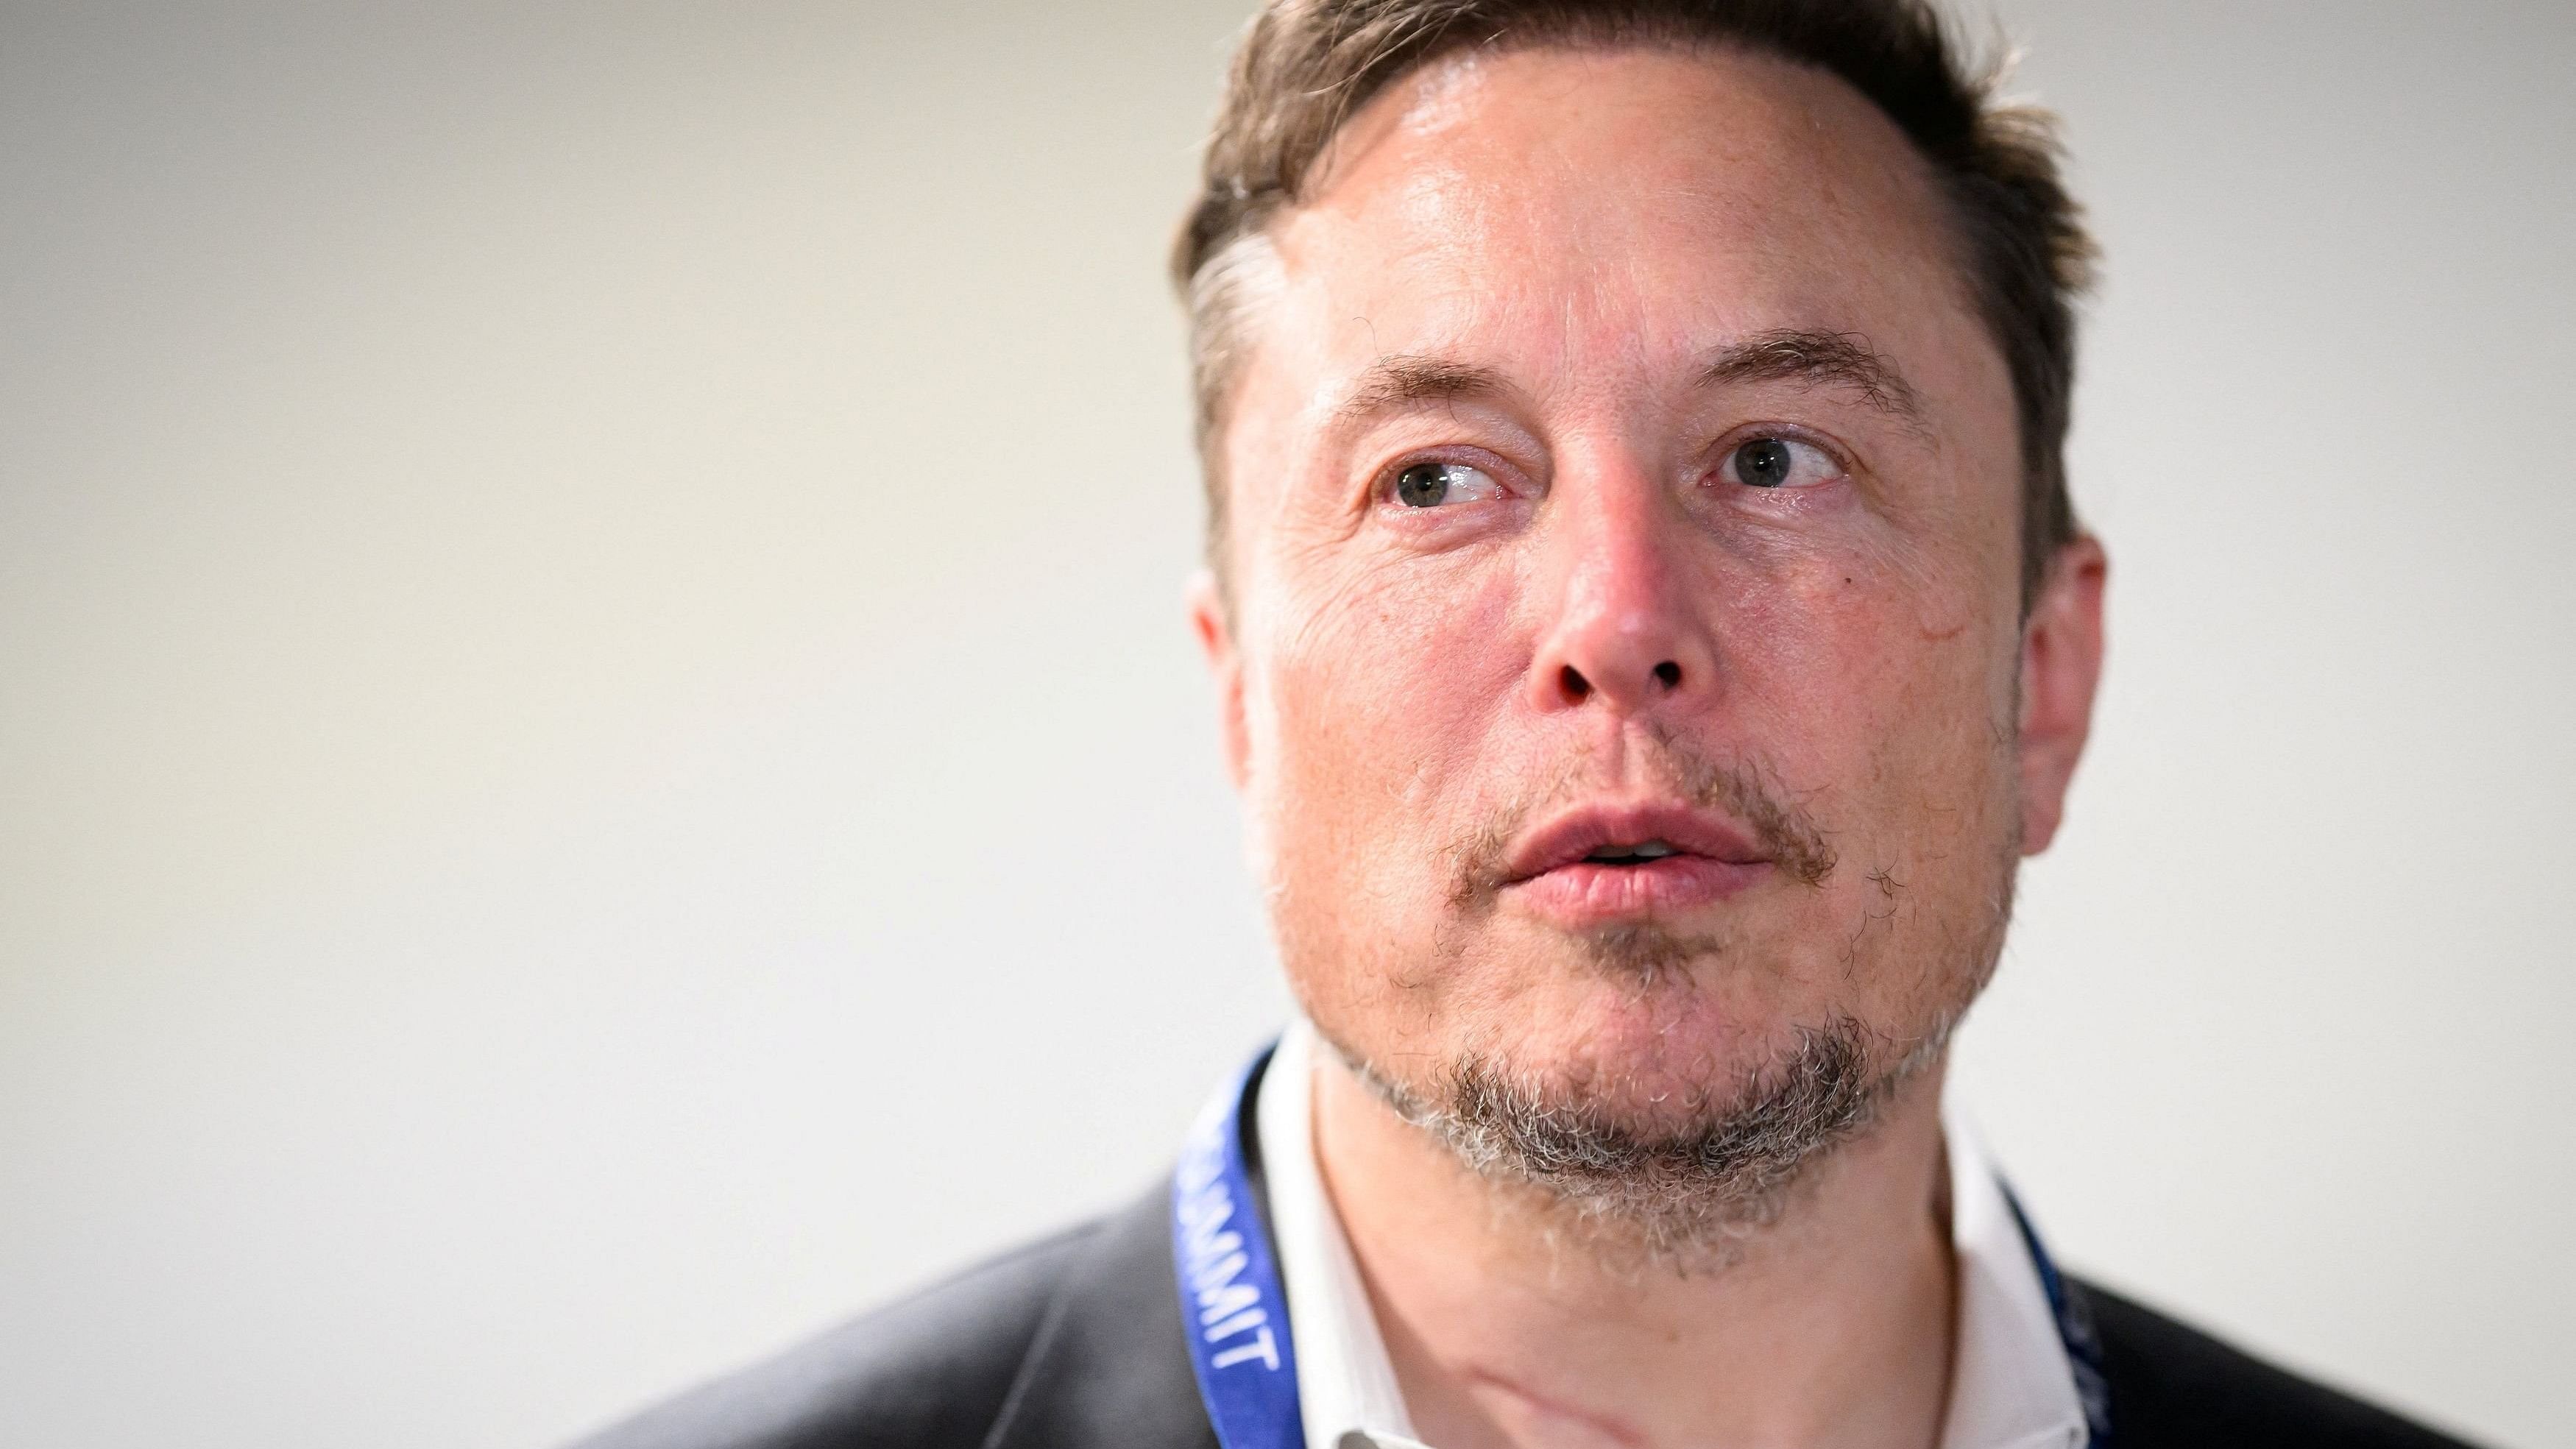 <div class="paragraphs"><p>Elon Musk.</p></div>